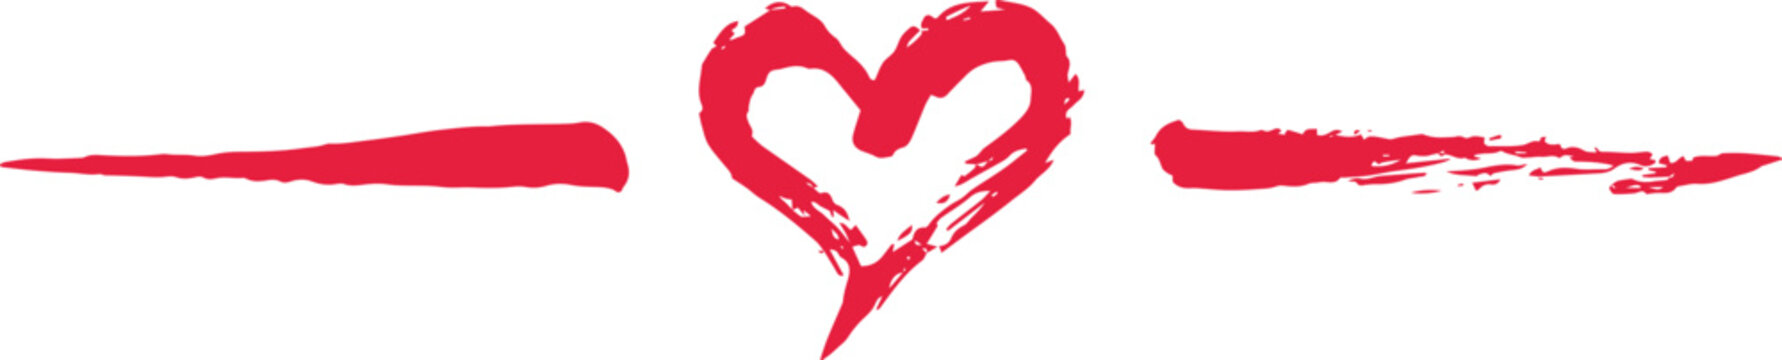 Grunge hand painted Valentine's Day heart divider